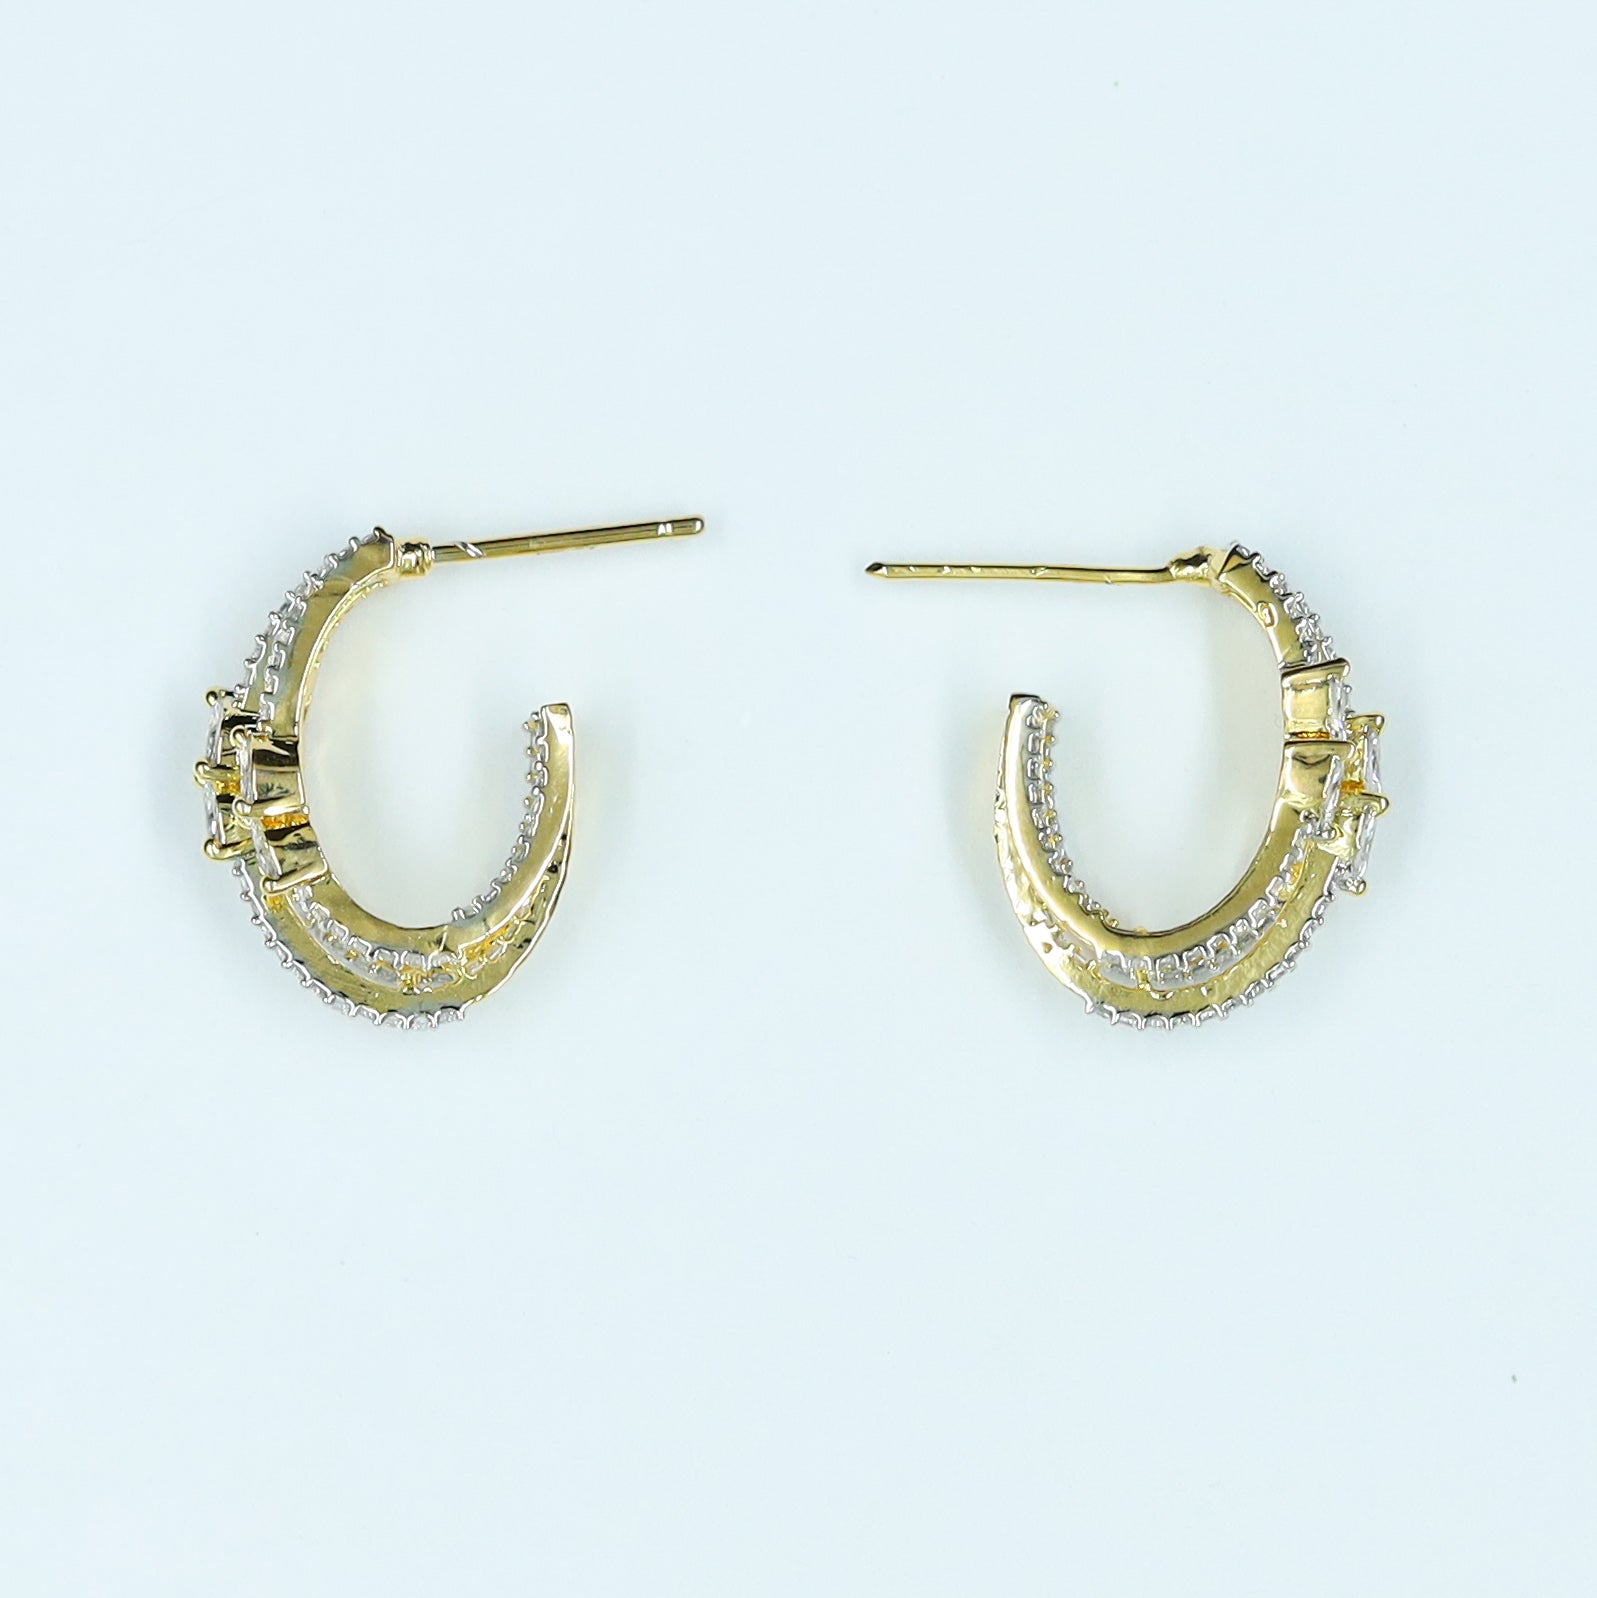 Bali Zircon/AD Earring 11920-69